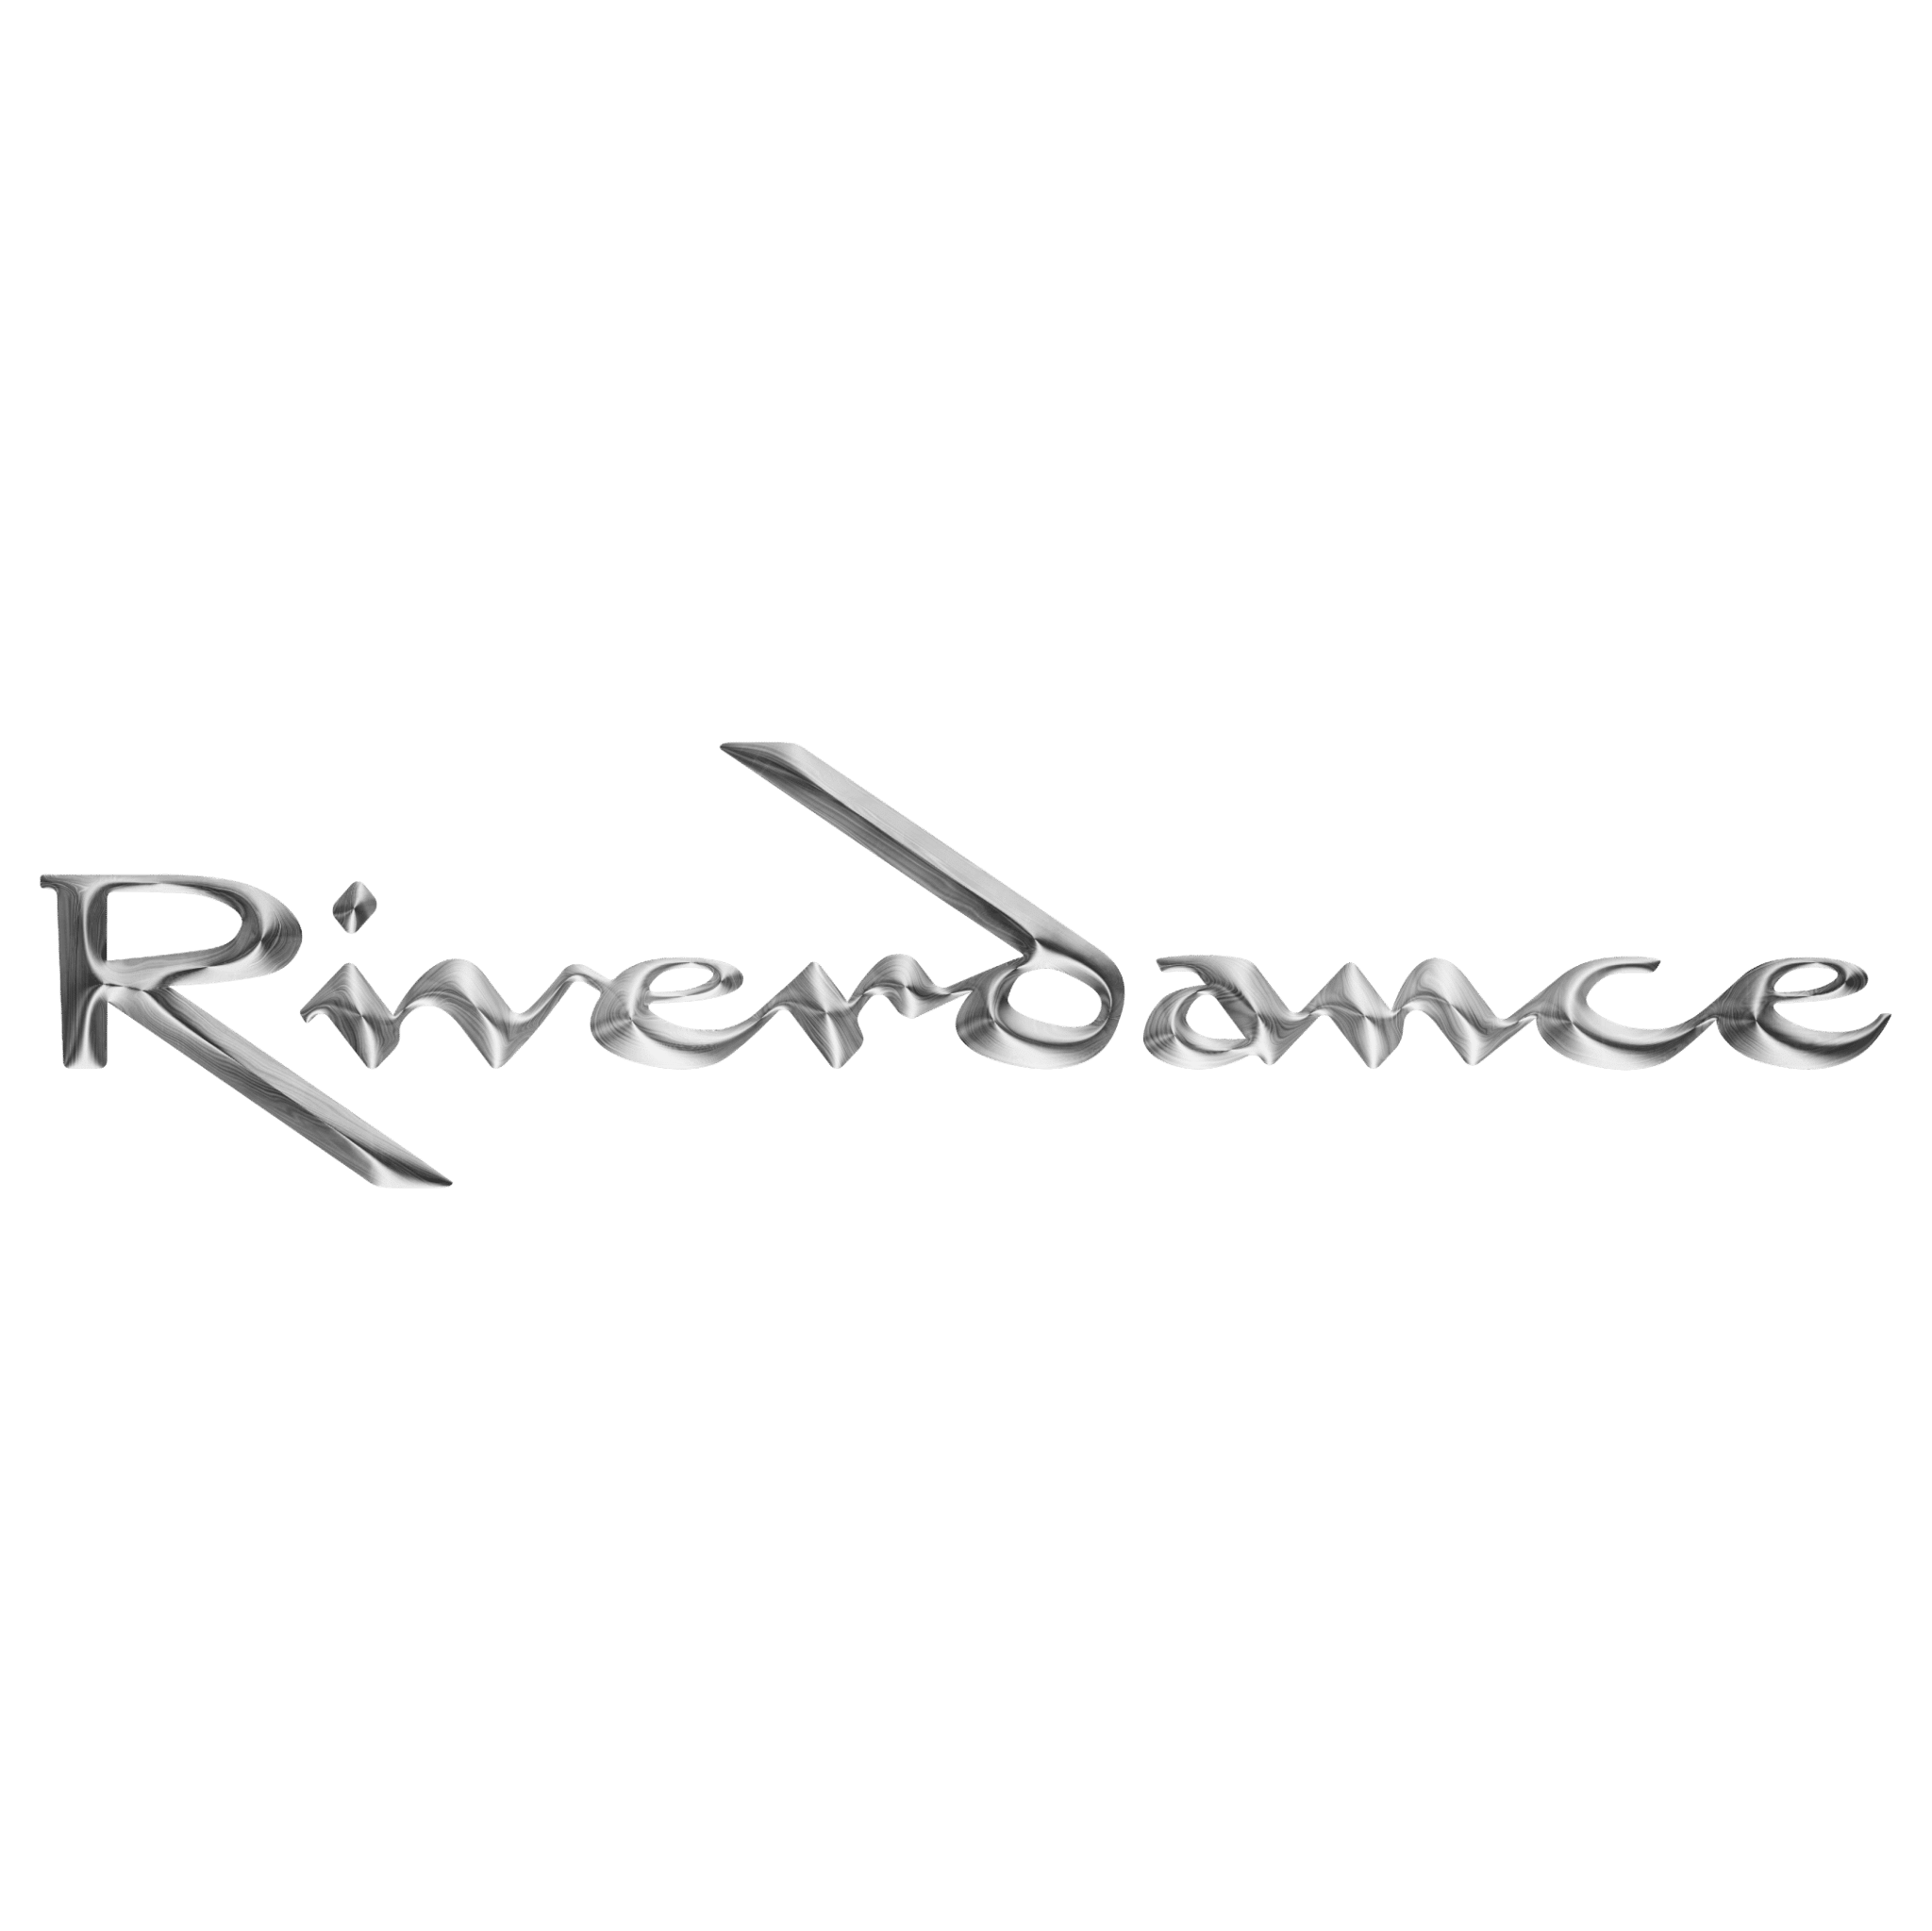 大河之舞 (Riverdance)